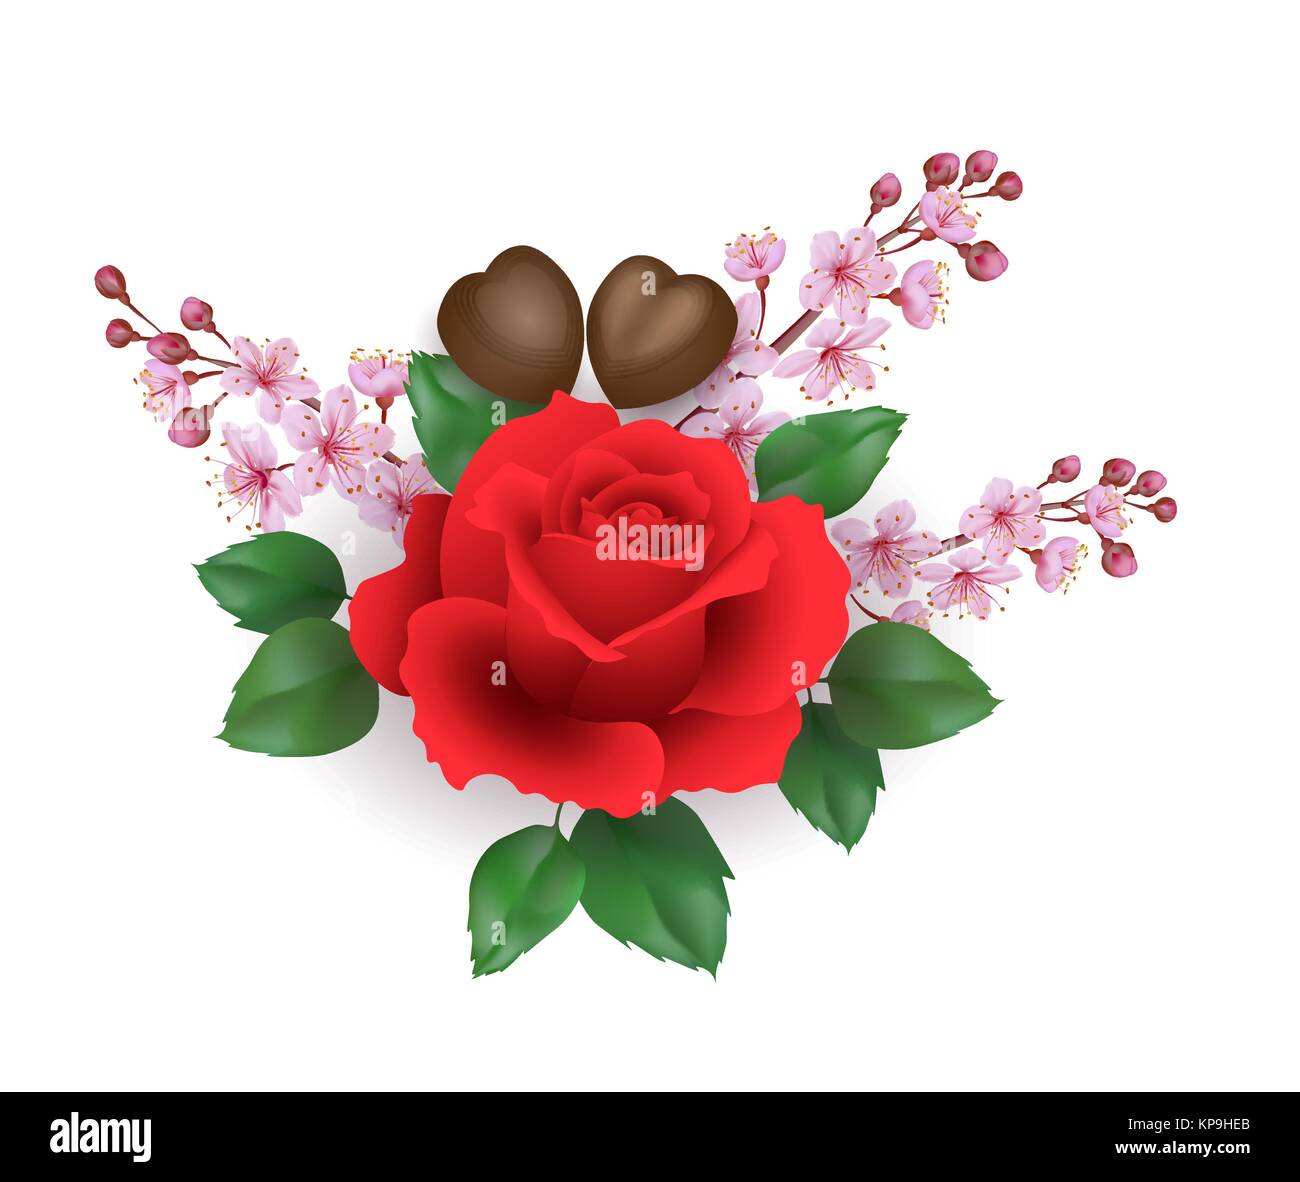 Realistische Valentinstag 3d Rose Blume Schokolade Sakura Blossom. Herzform candy red flower cherry Blütenblätter grüne Blätter. Urlaub vorhanden Romantisches Datum Geschenk Vector Illustration Stock Vektor